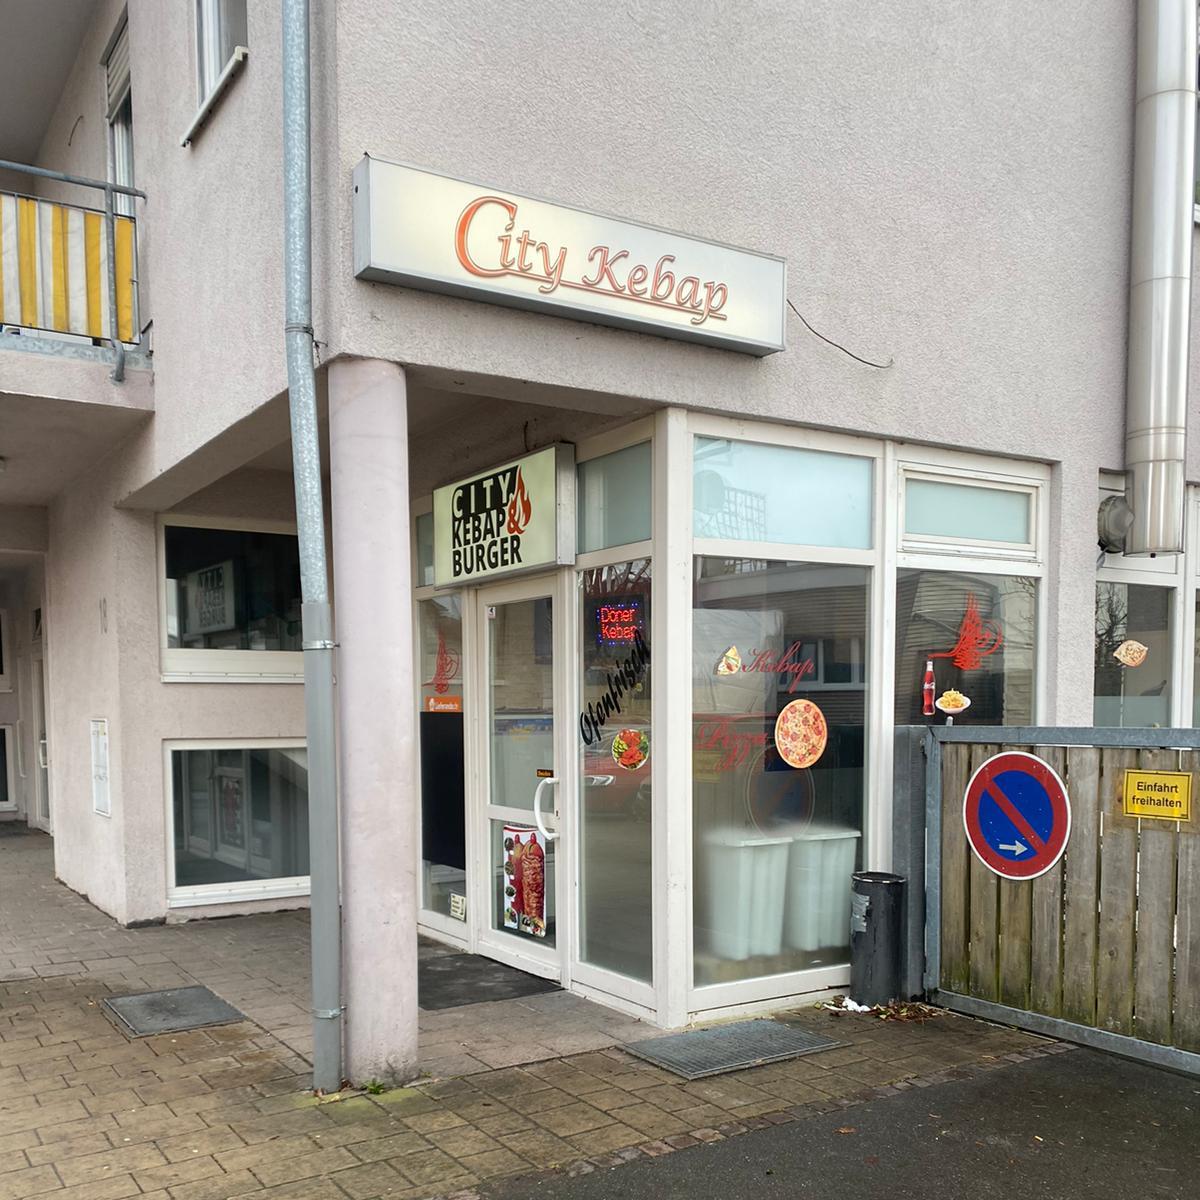 Restaurant "City-Kebap" in Uhldingen-Mühlhofen